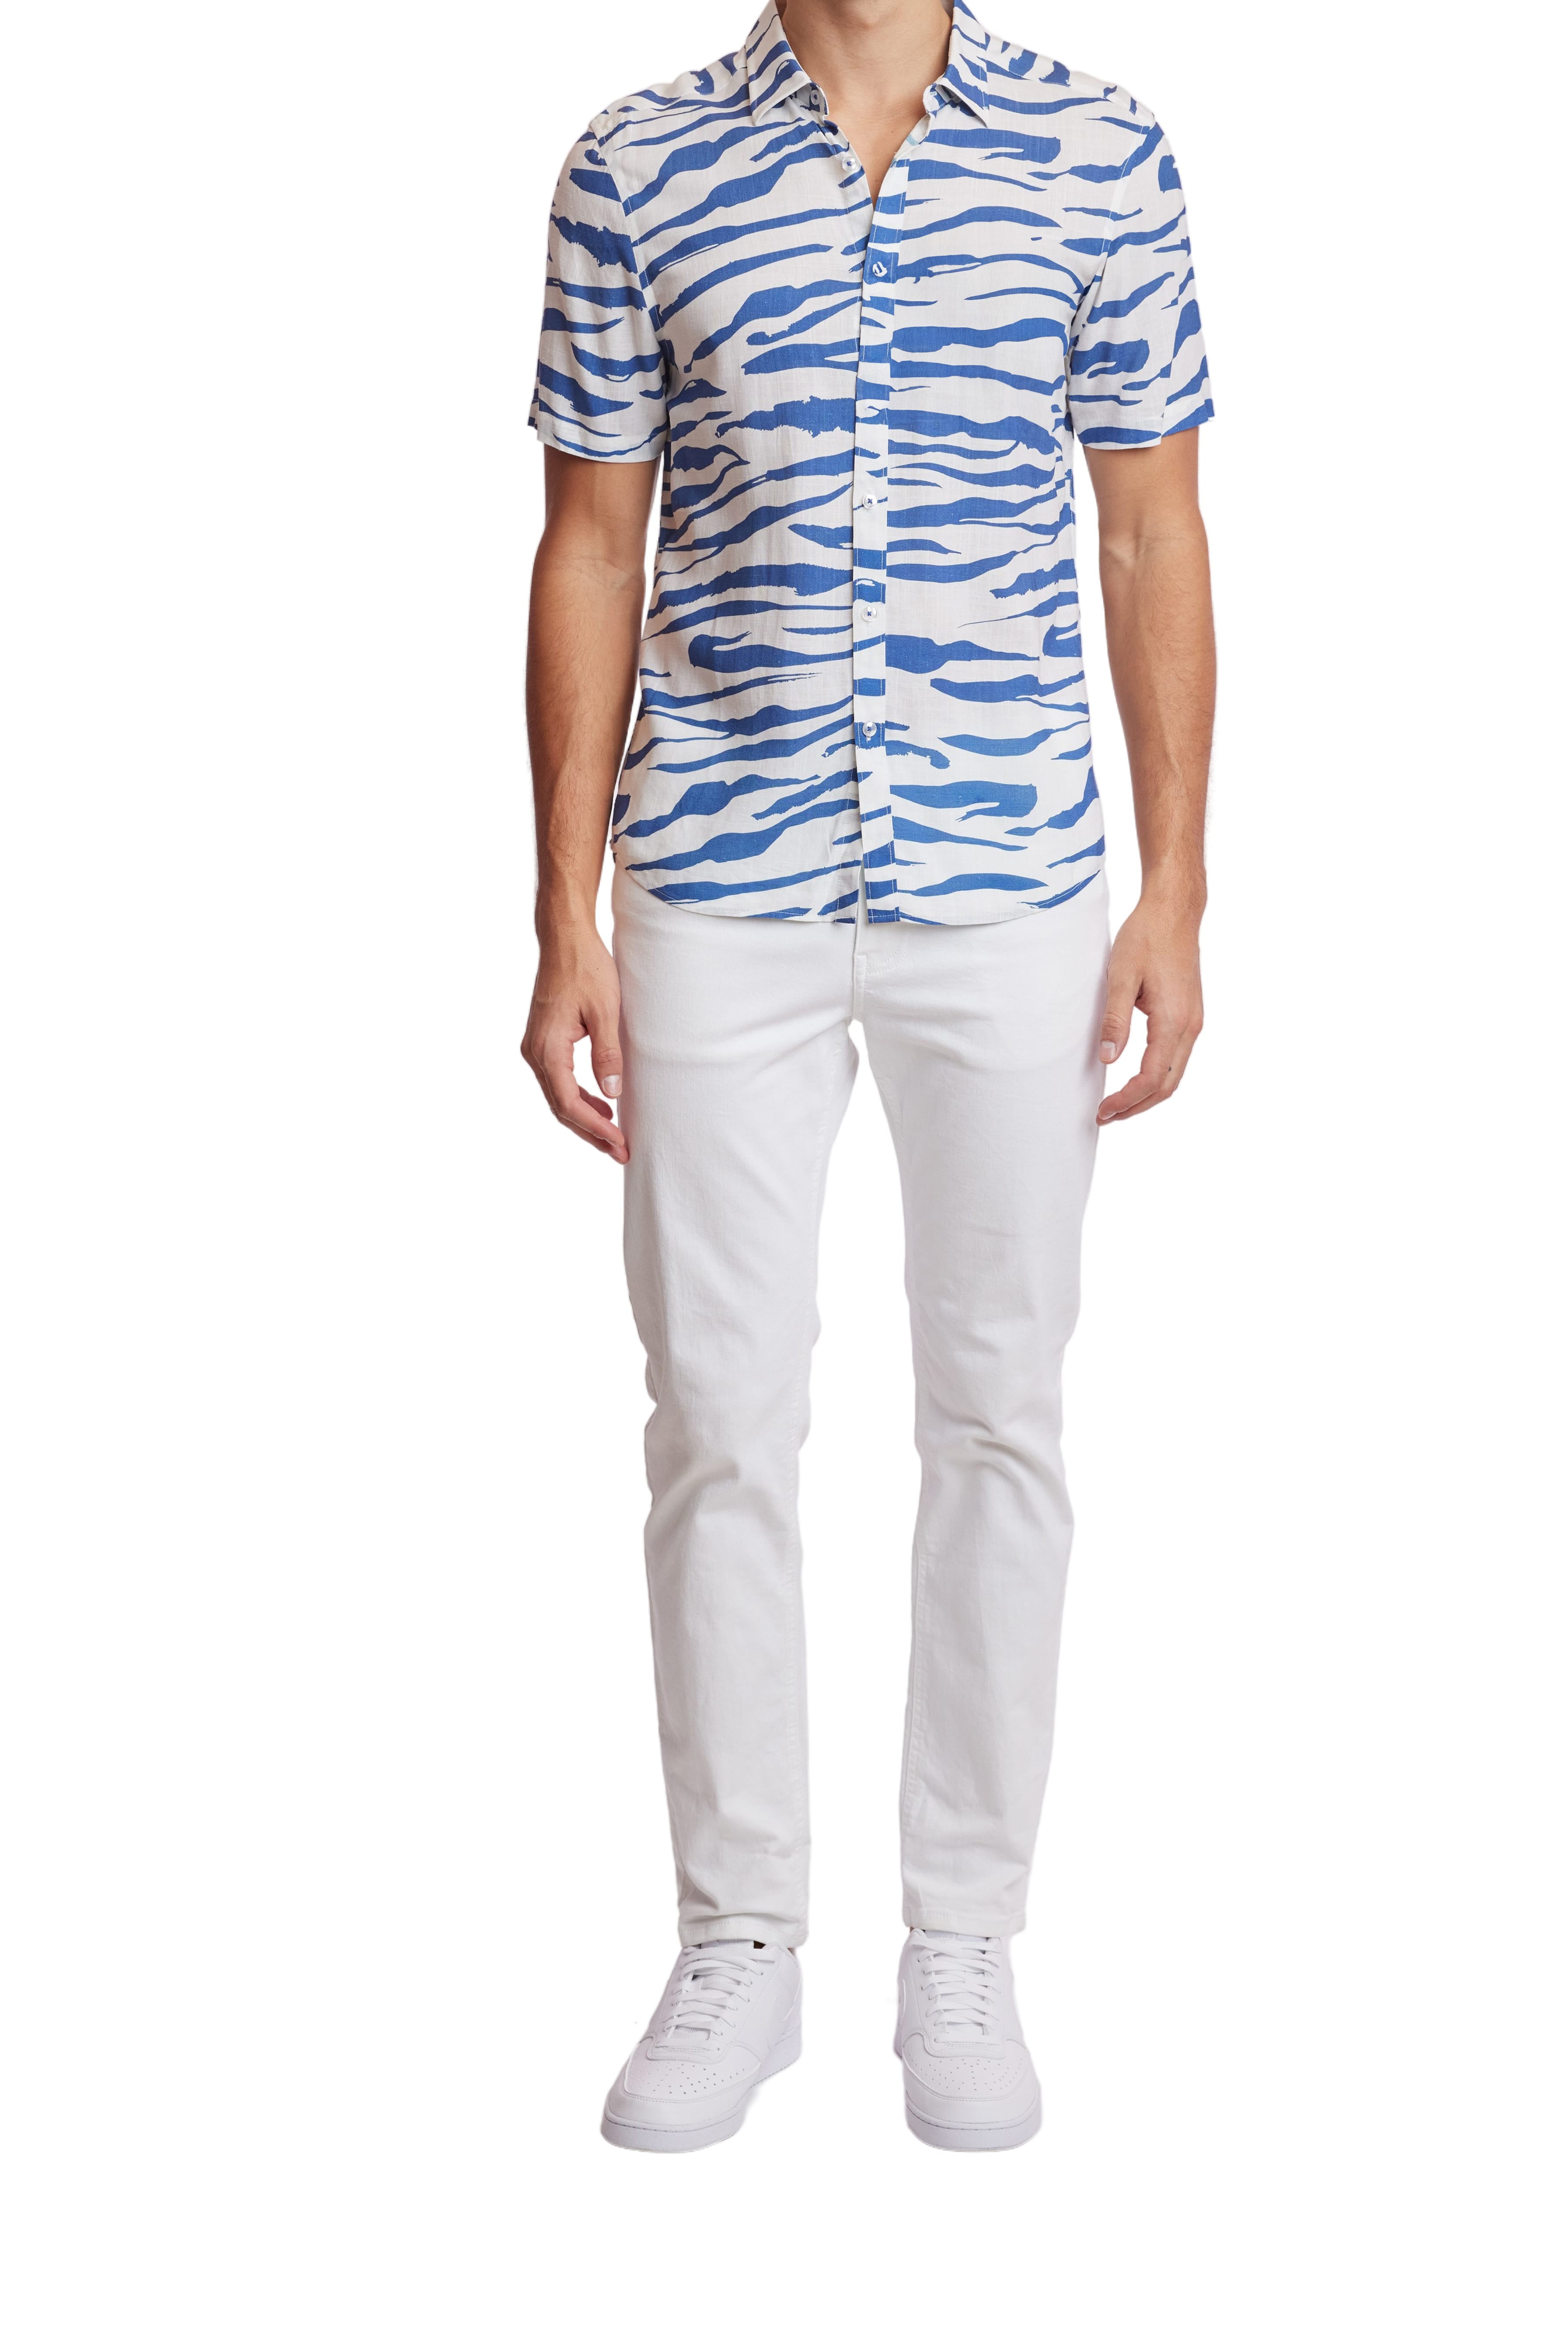 Soleil S/S Shirt - White Royal Zebra